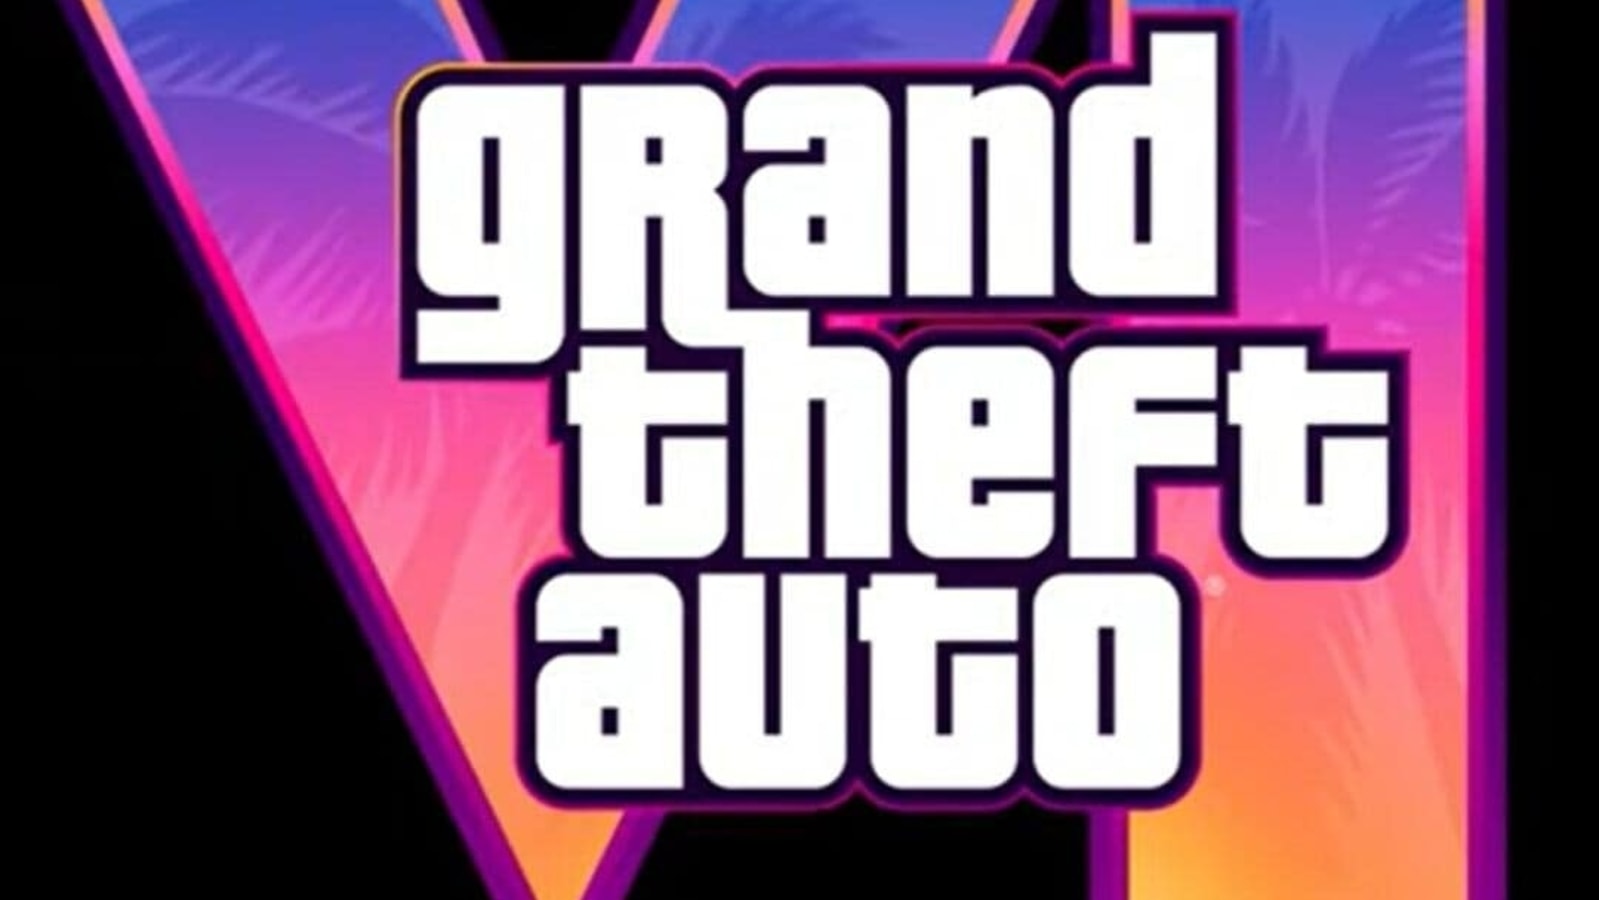 Grand Theft Auto VI chega em 2025 para PS5 e Xbox Series X/S